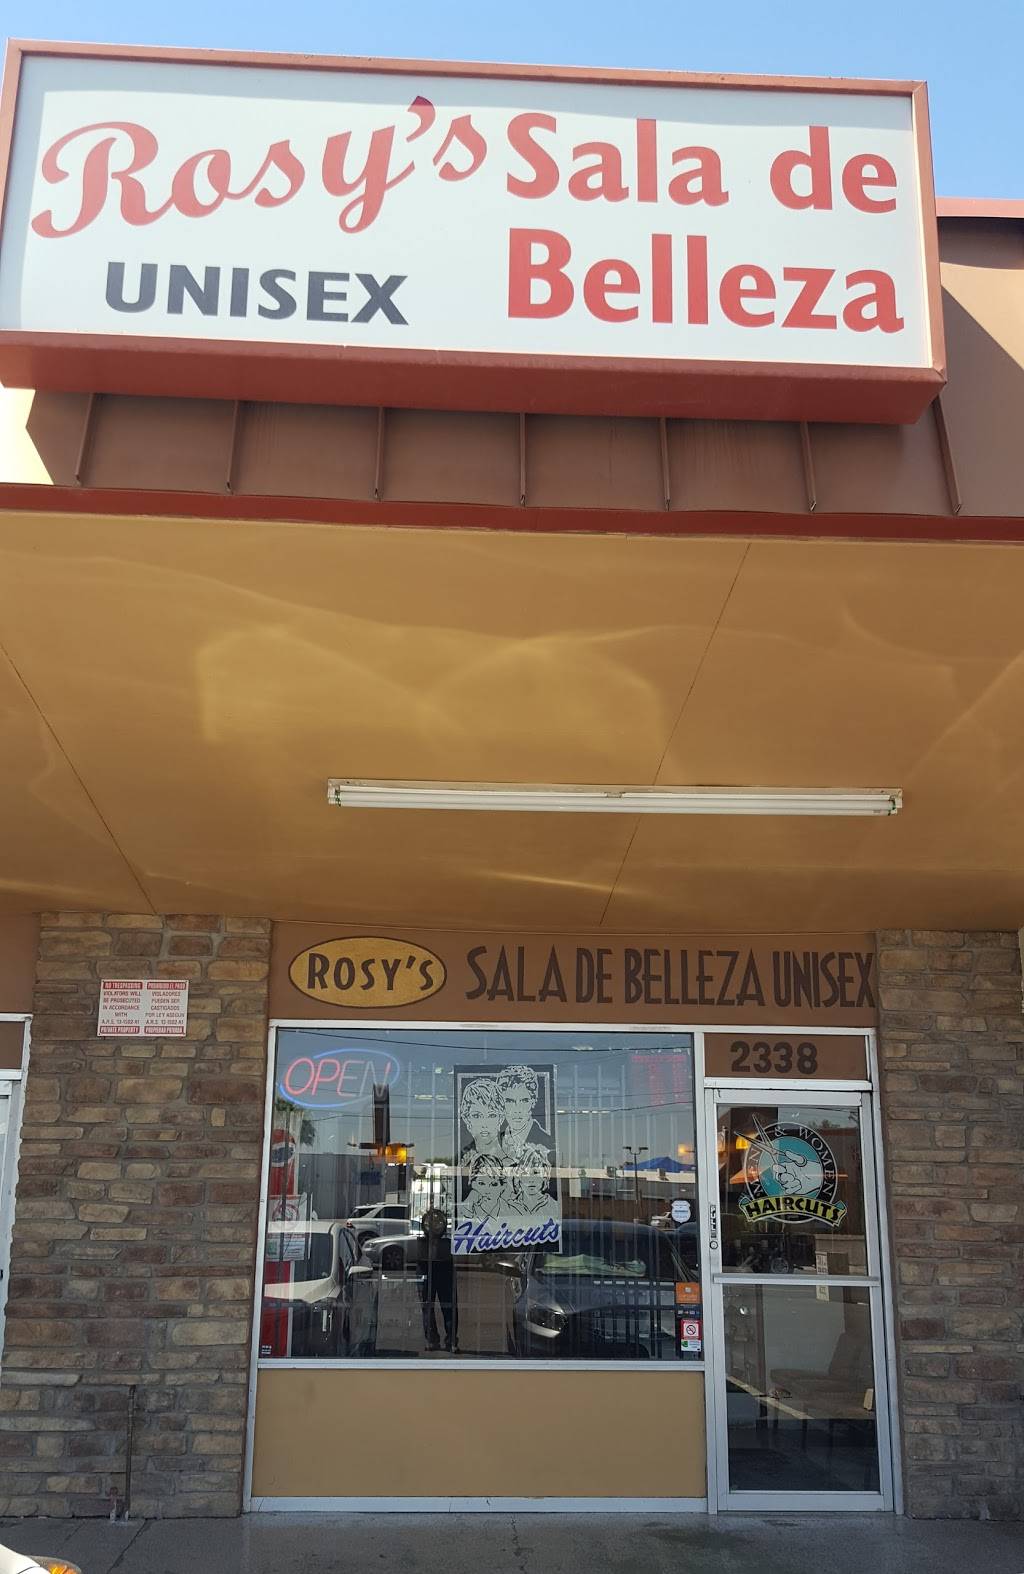 Rosys Salon De Belleza | 2338 W Thomas Rd, Phoenix, AZ 85015 | Phone: (602) 495-1099